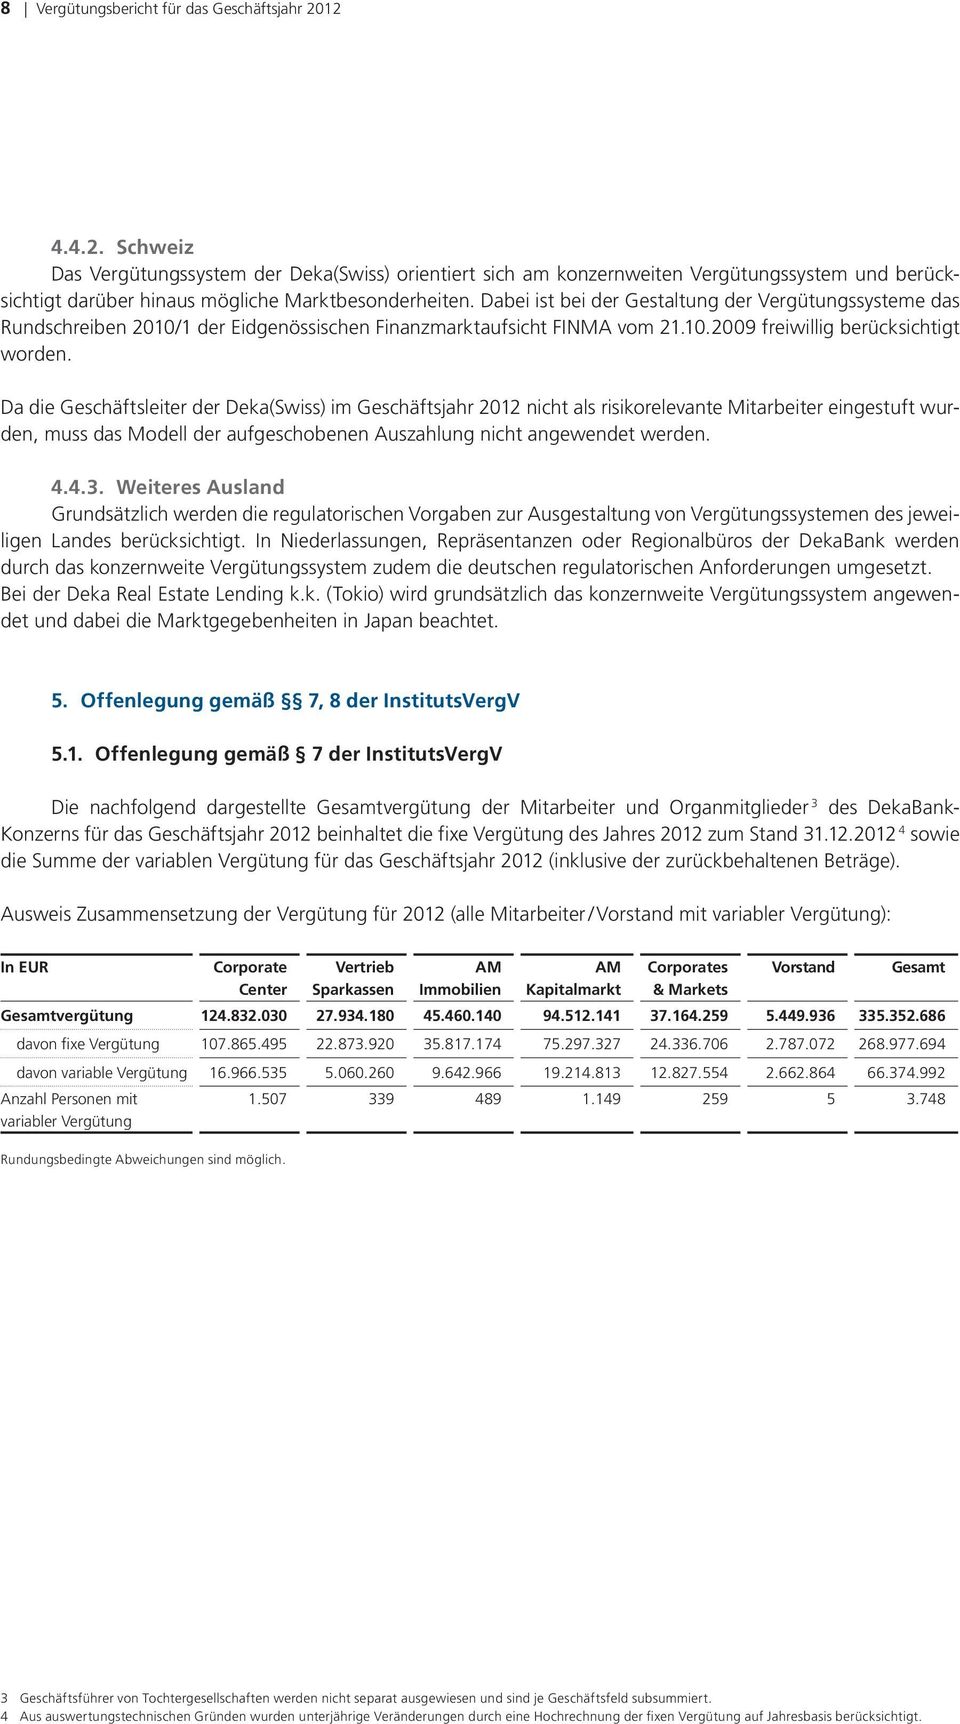 Dabei ist bei der Gestaltung der Vergütungssysteme das Rundschreiben 2010/1 der Eidgenössischen Finanzmarktaufsicht FINMA vom 21.10.2009 freiwillig berücksichtigt worden.